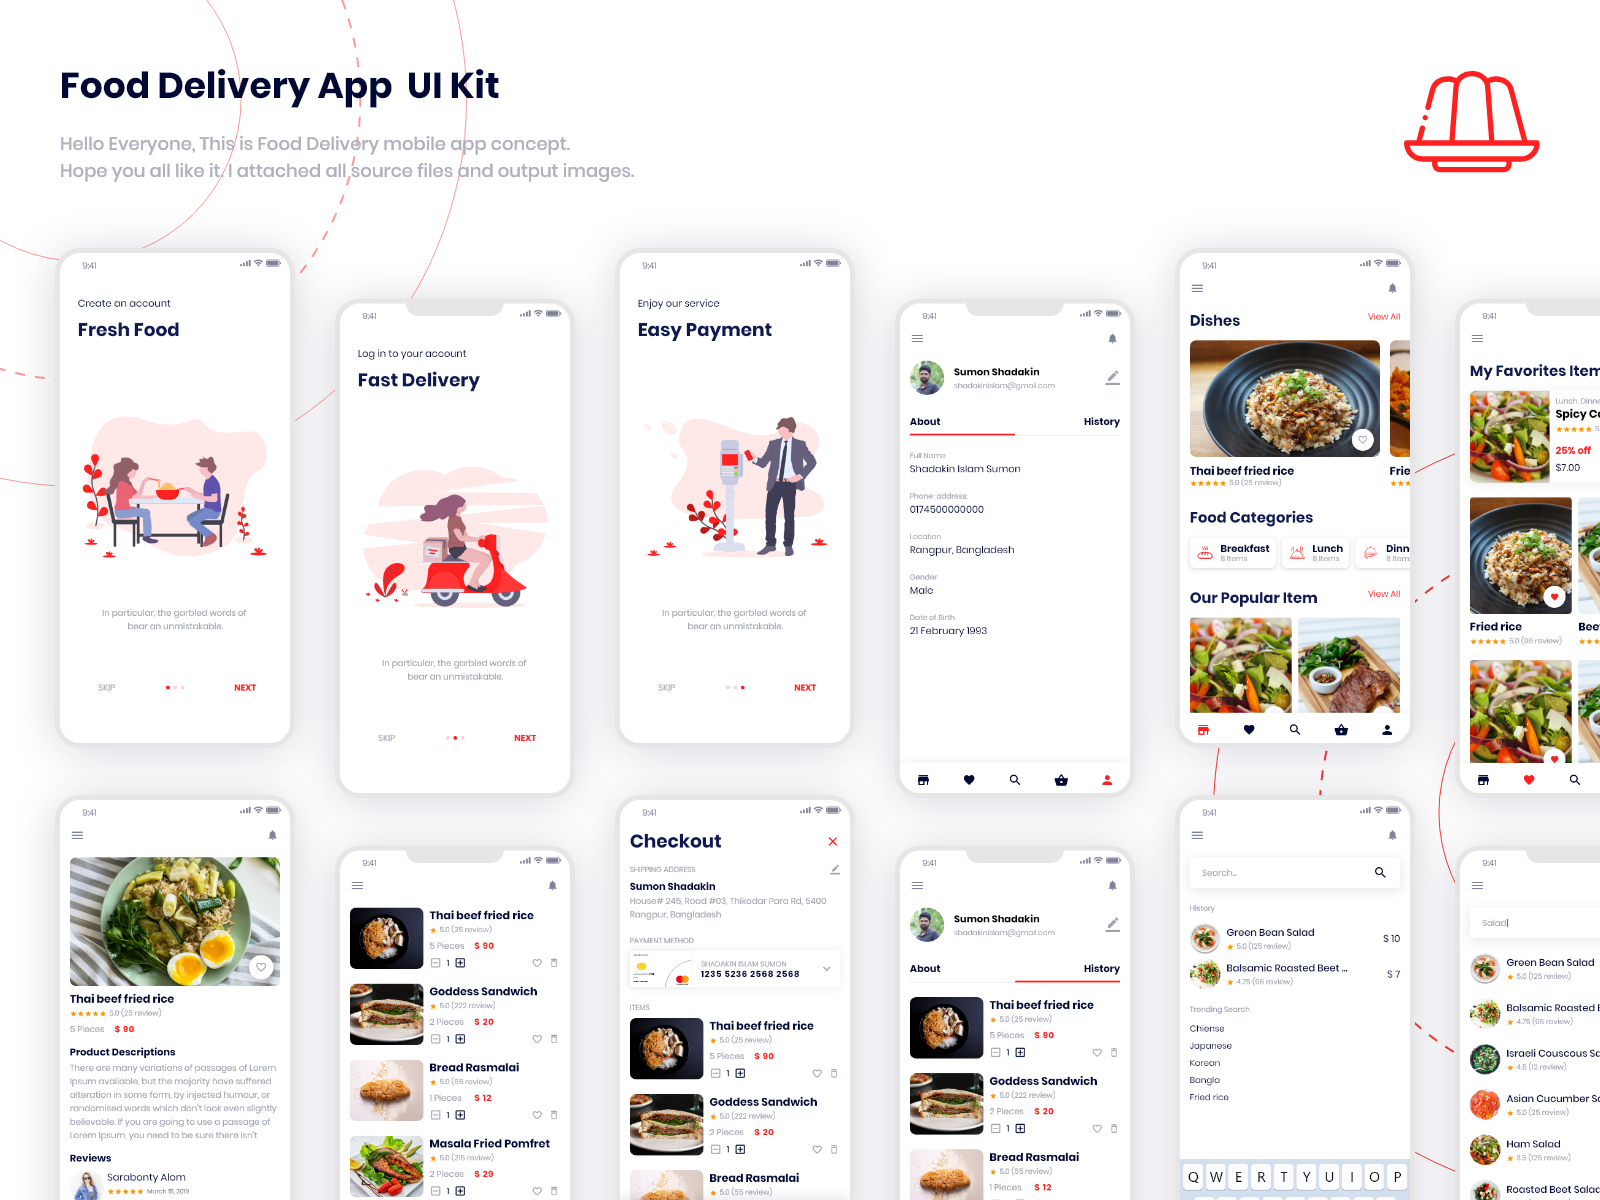 UI Kits design idea #160: Food Delivery App  Ui Kit by Shadakin Islam Sumon on Dribbble